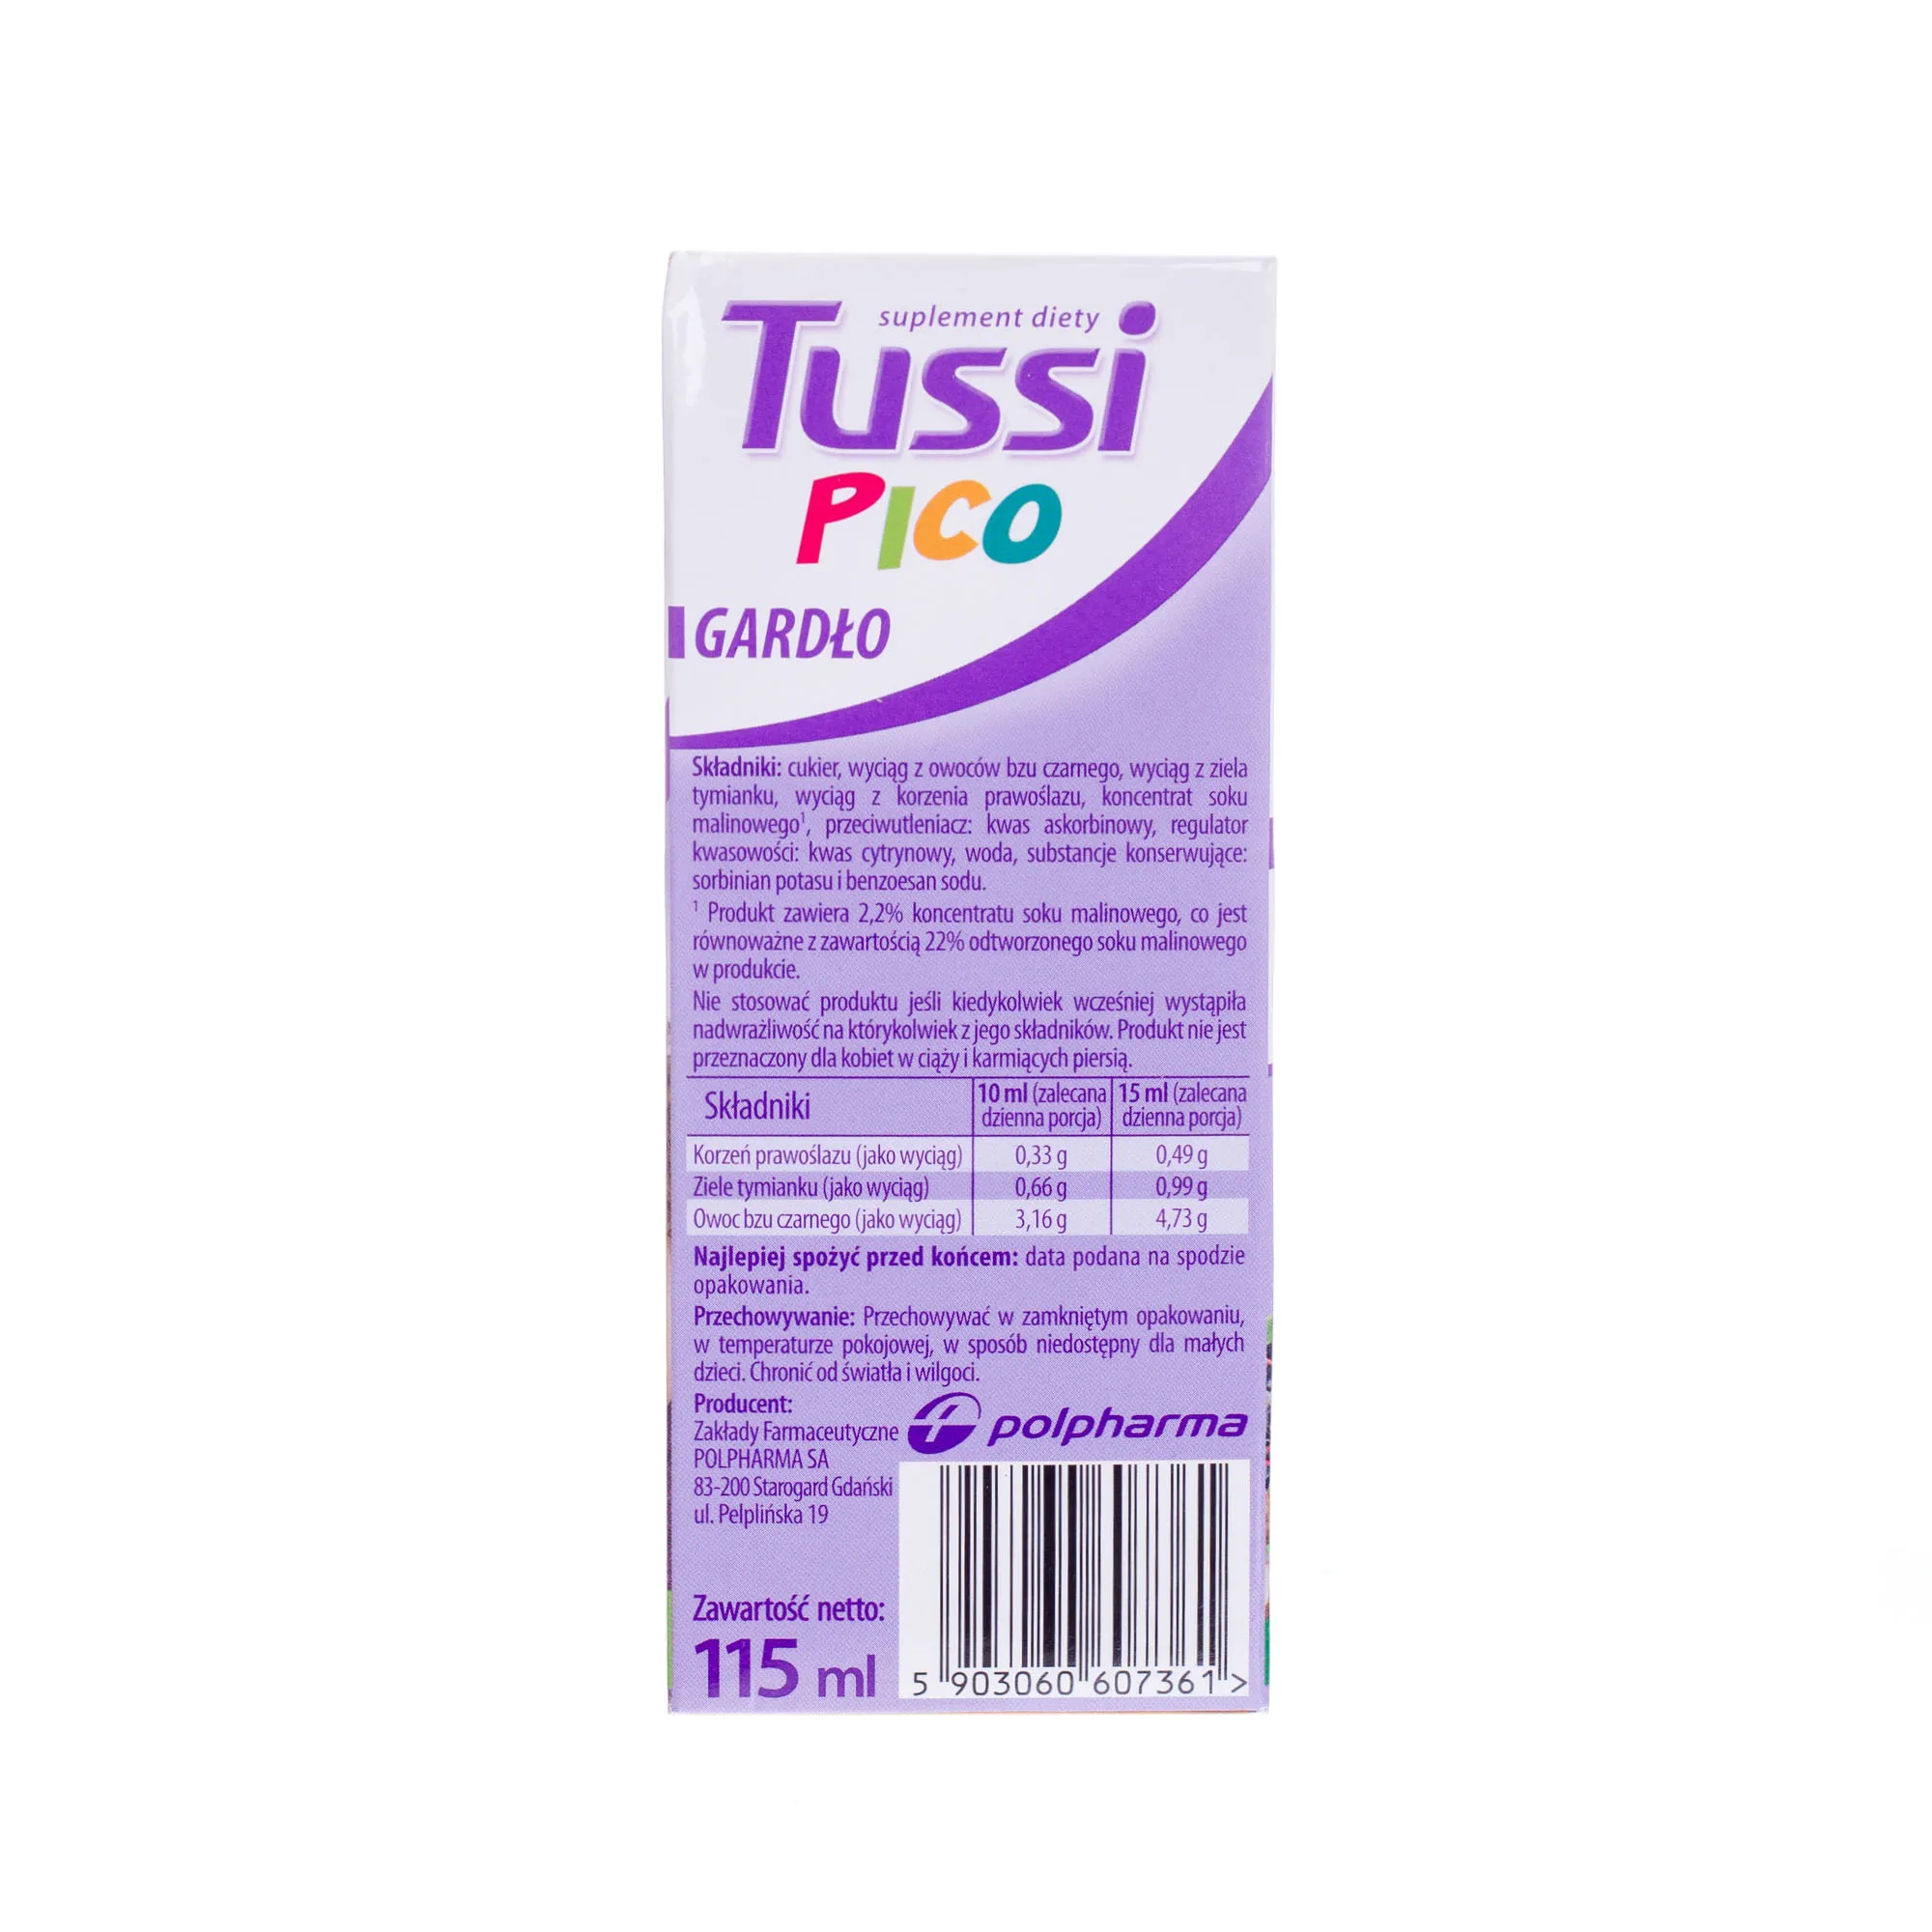 Tussi Pico Gardło, suplement diety z wyciągiem z prawoślazu, tymianku i czarnegoblu, 115 ml 